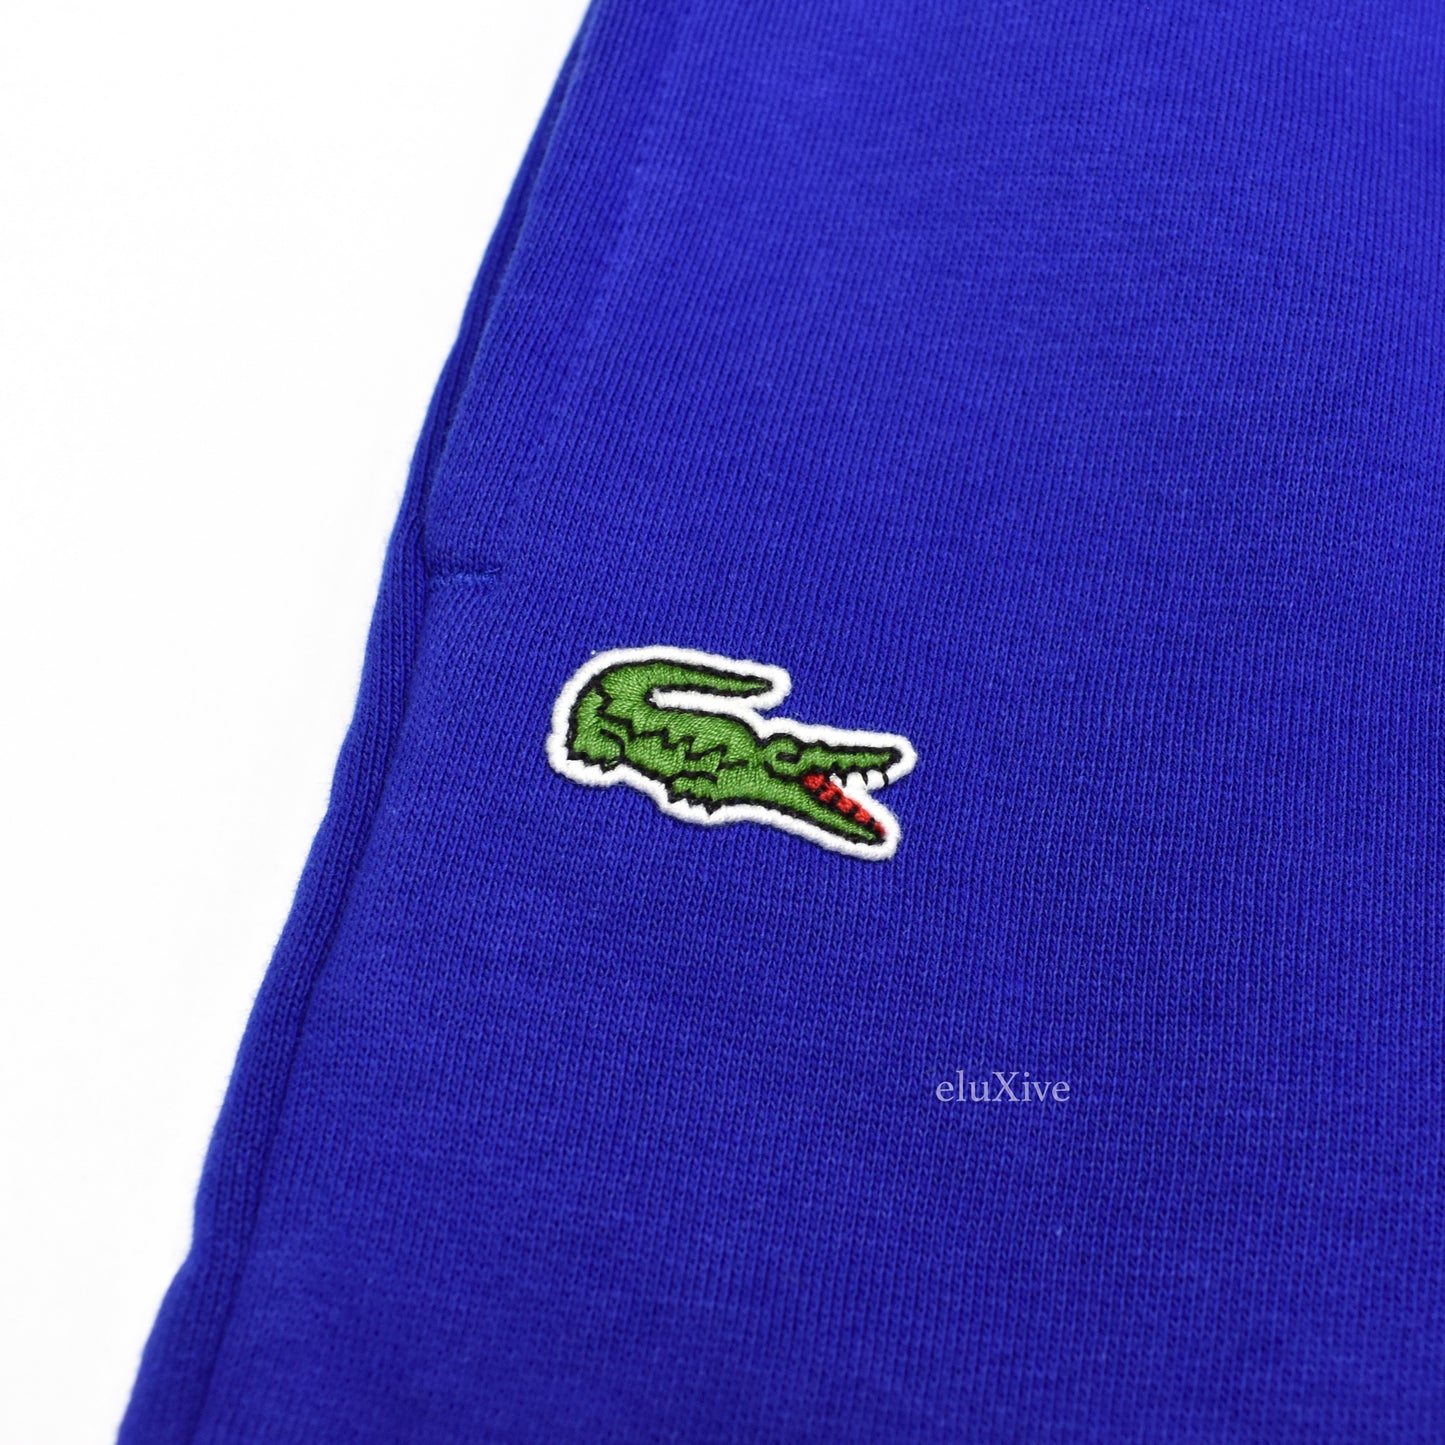 Lacoste - Blue Croc Logo Sweatpants